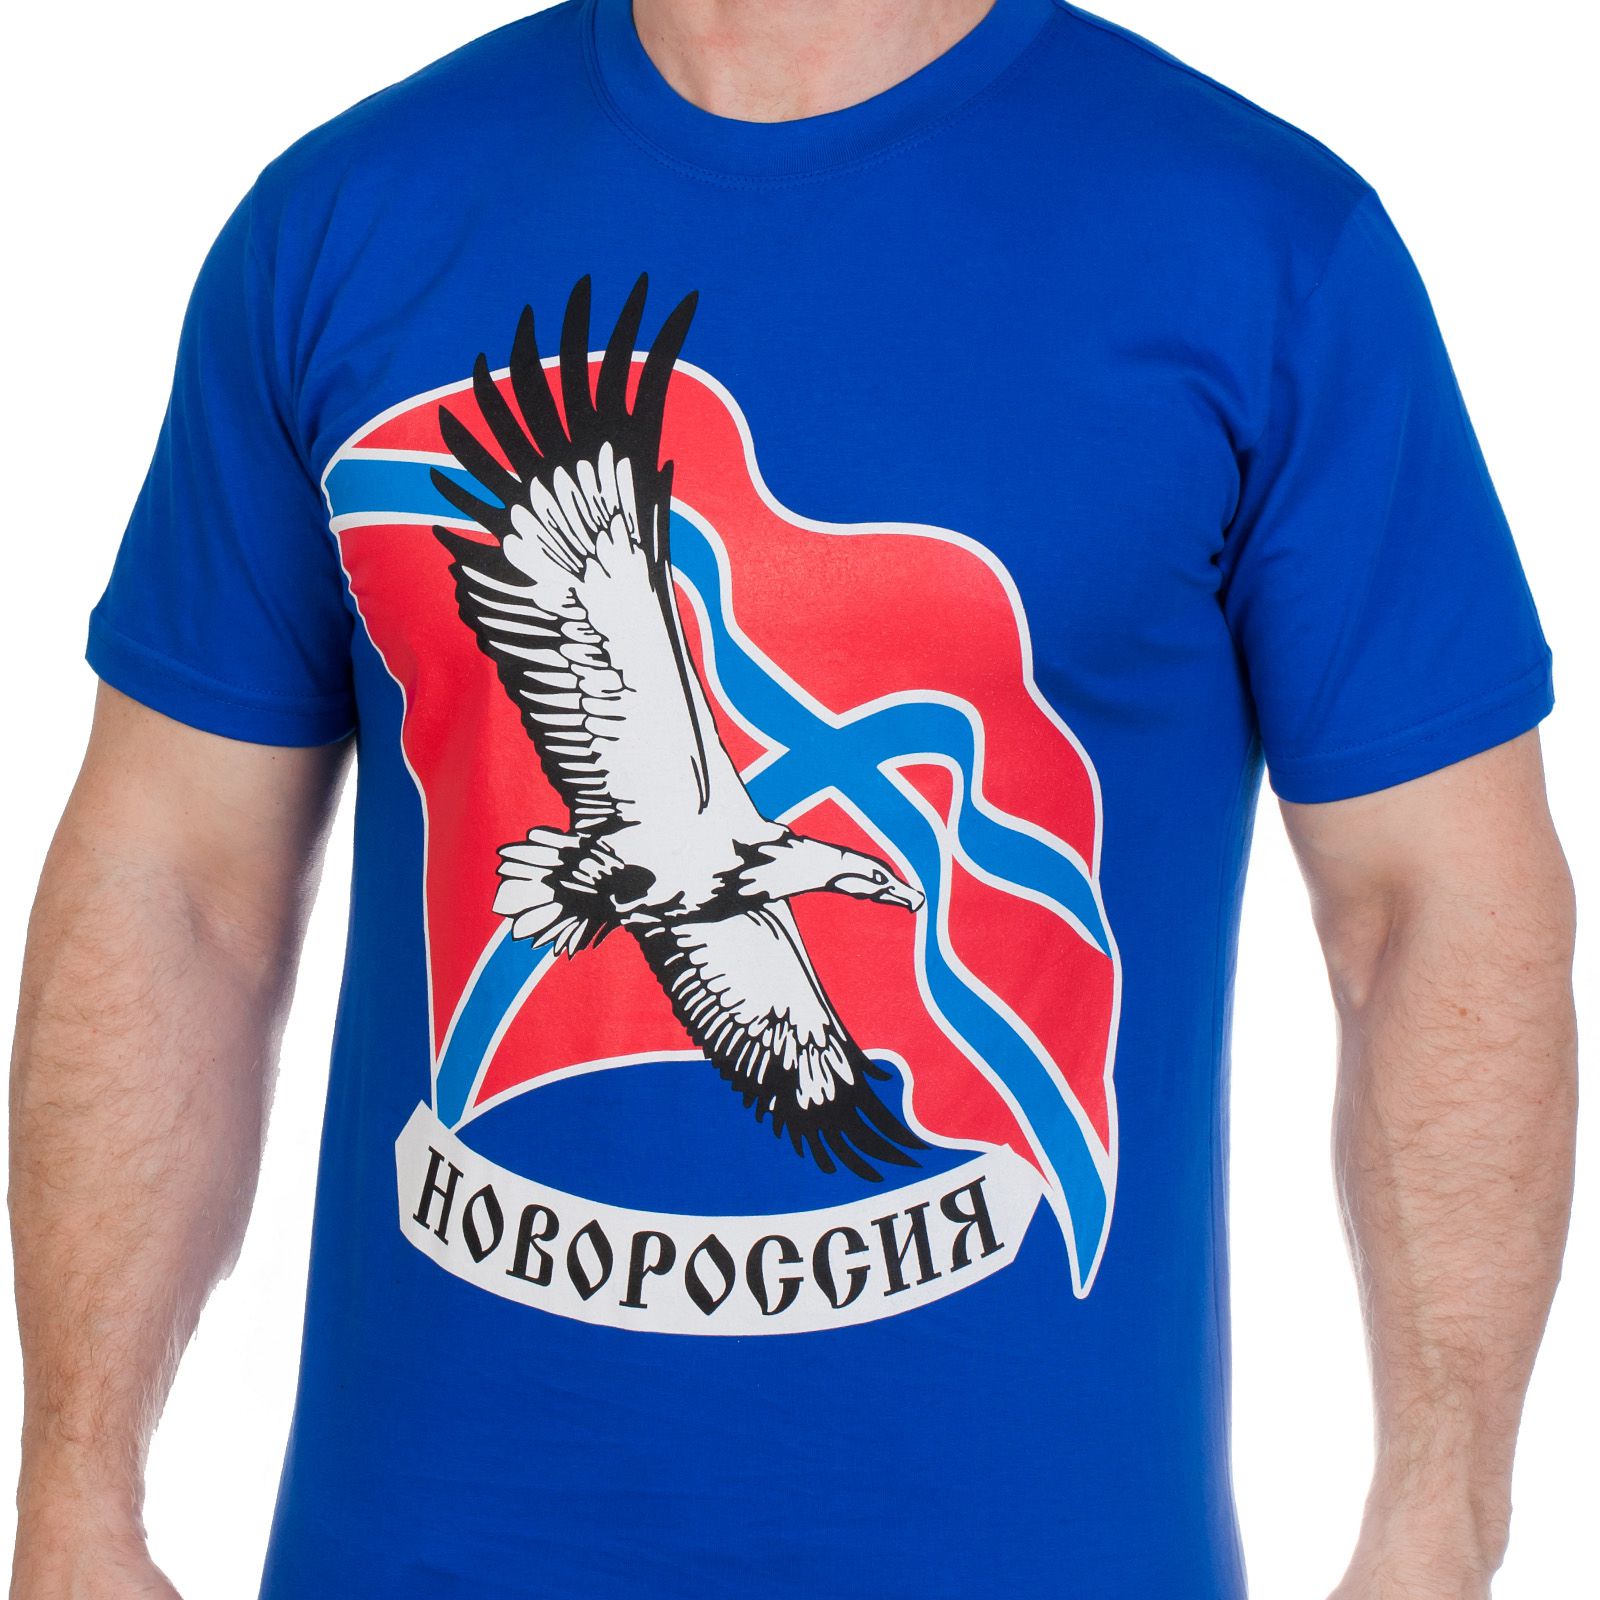 Купить футболки «Свободная Новороссия» по выгодной цене с доставкой